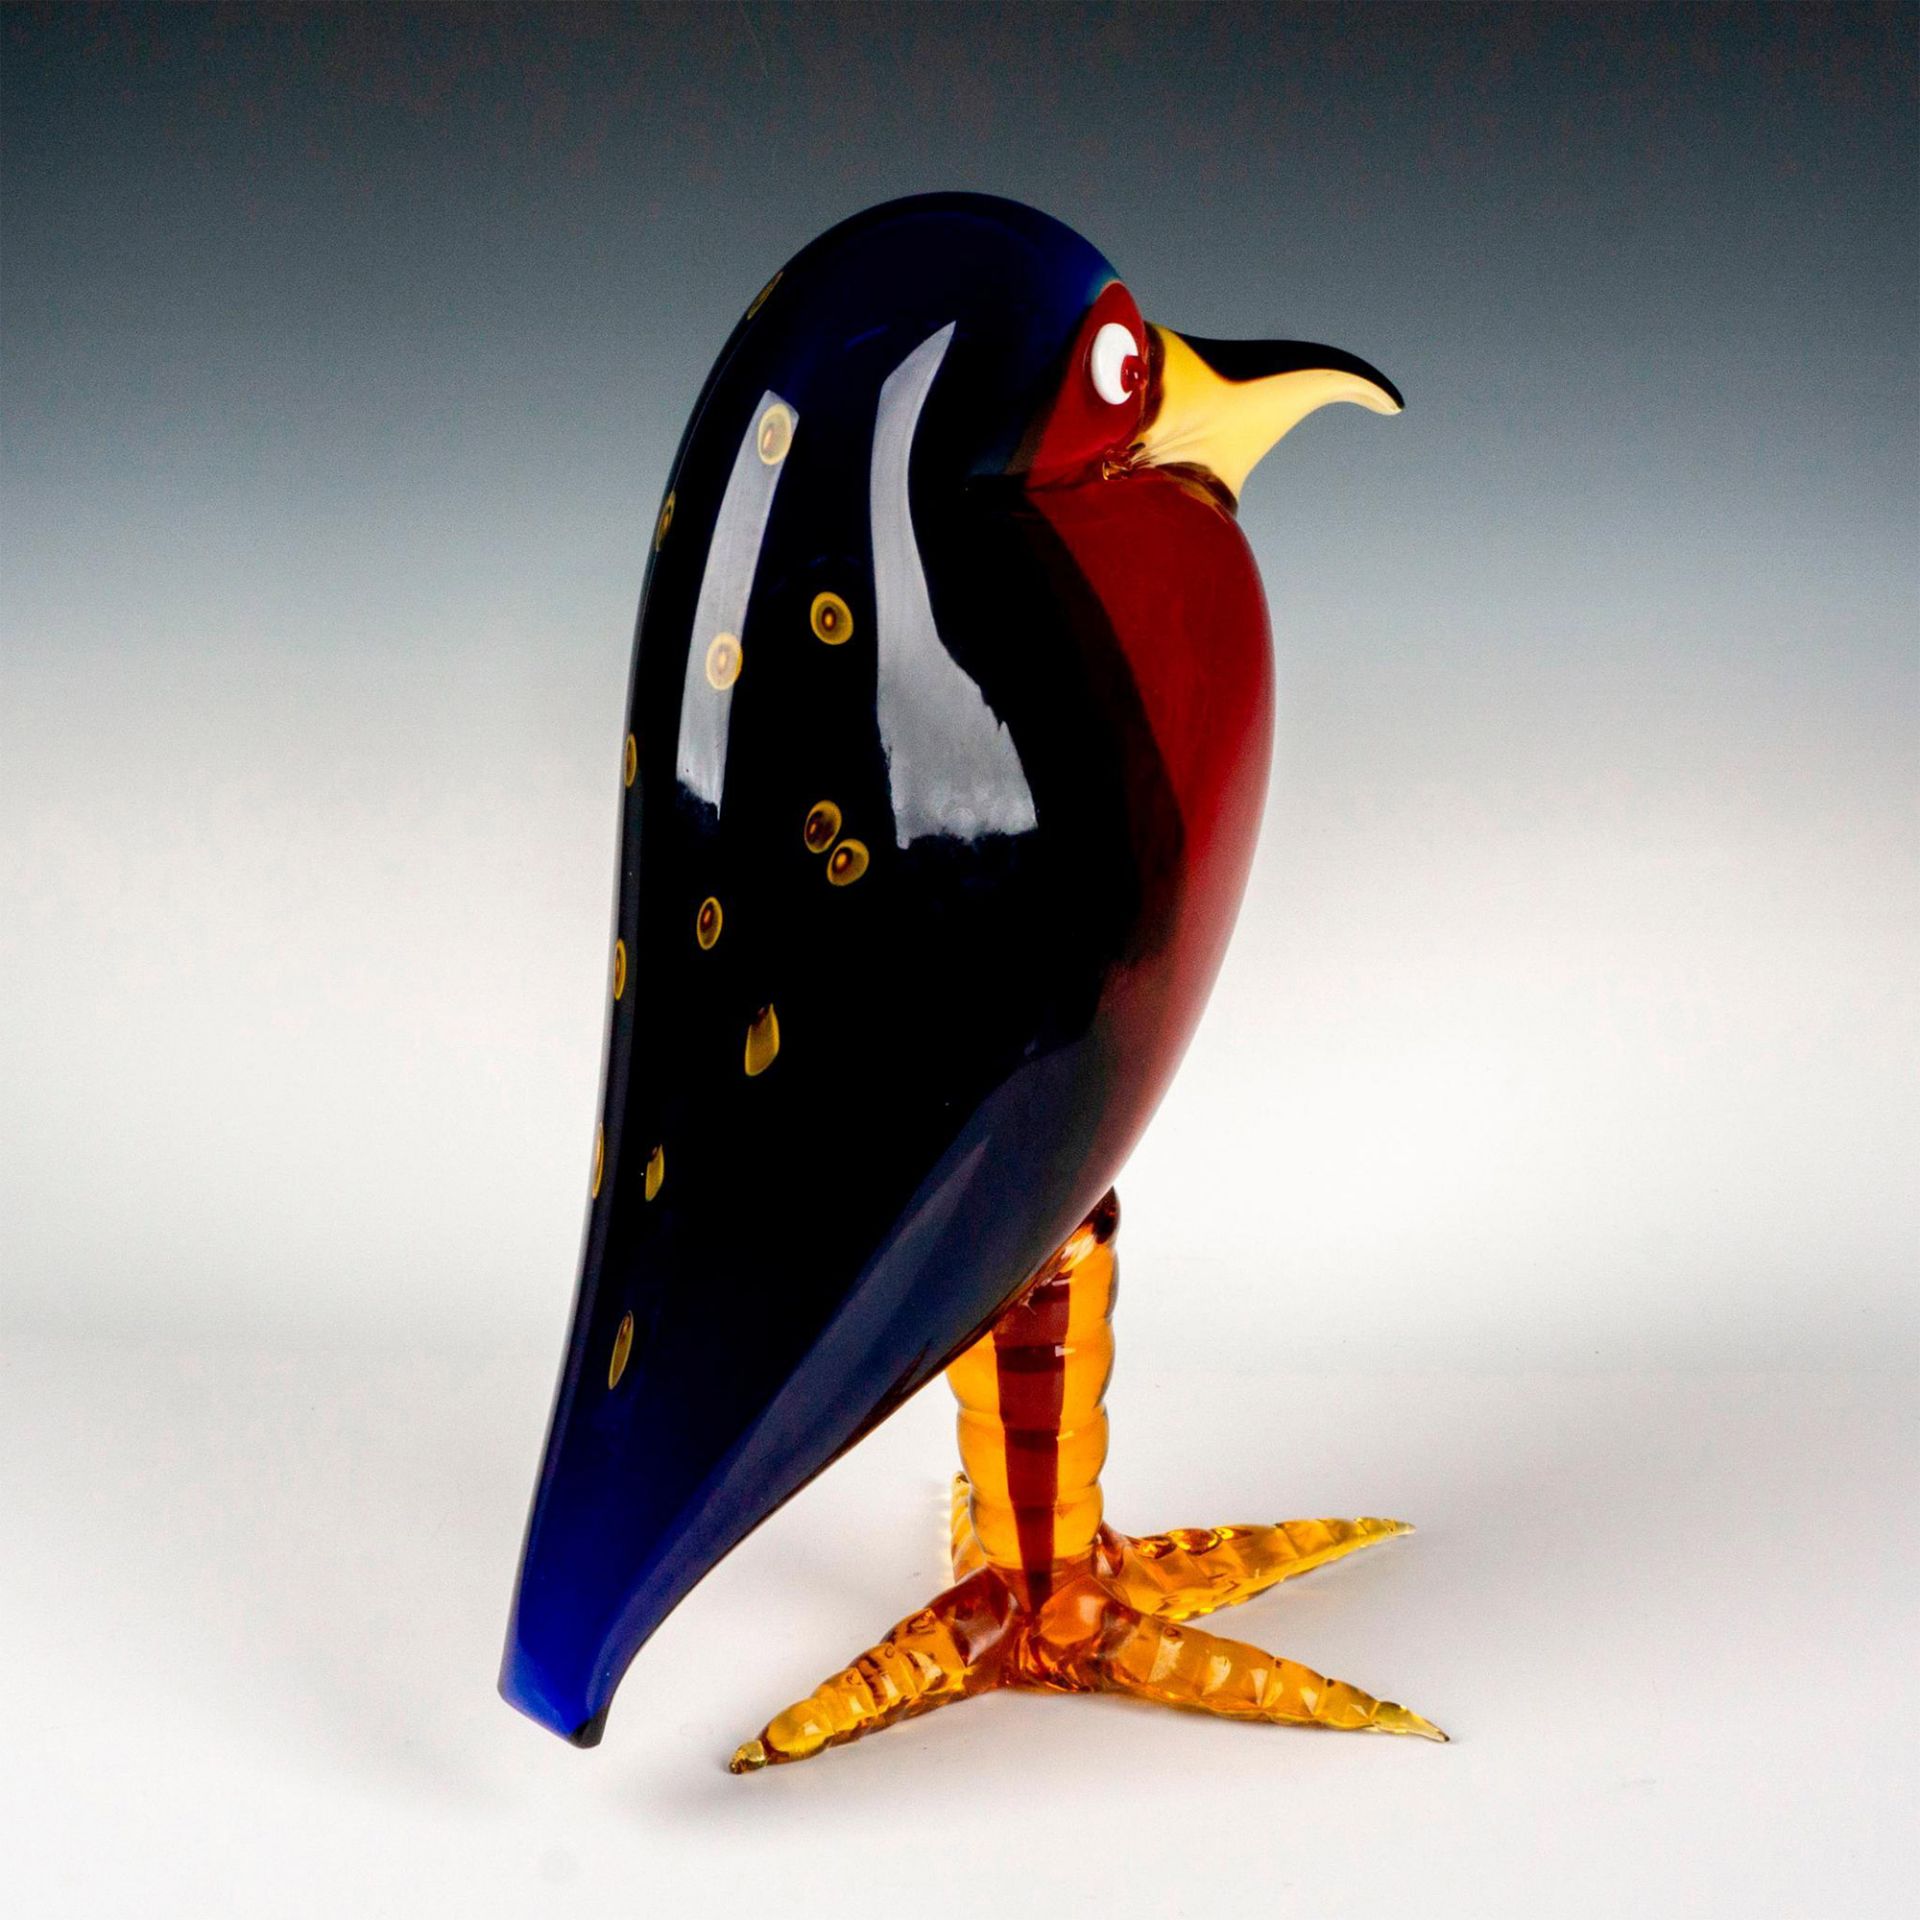 Murano Art Glass Bird Sculpture - Image 3 of 4